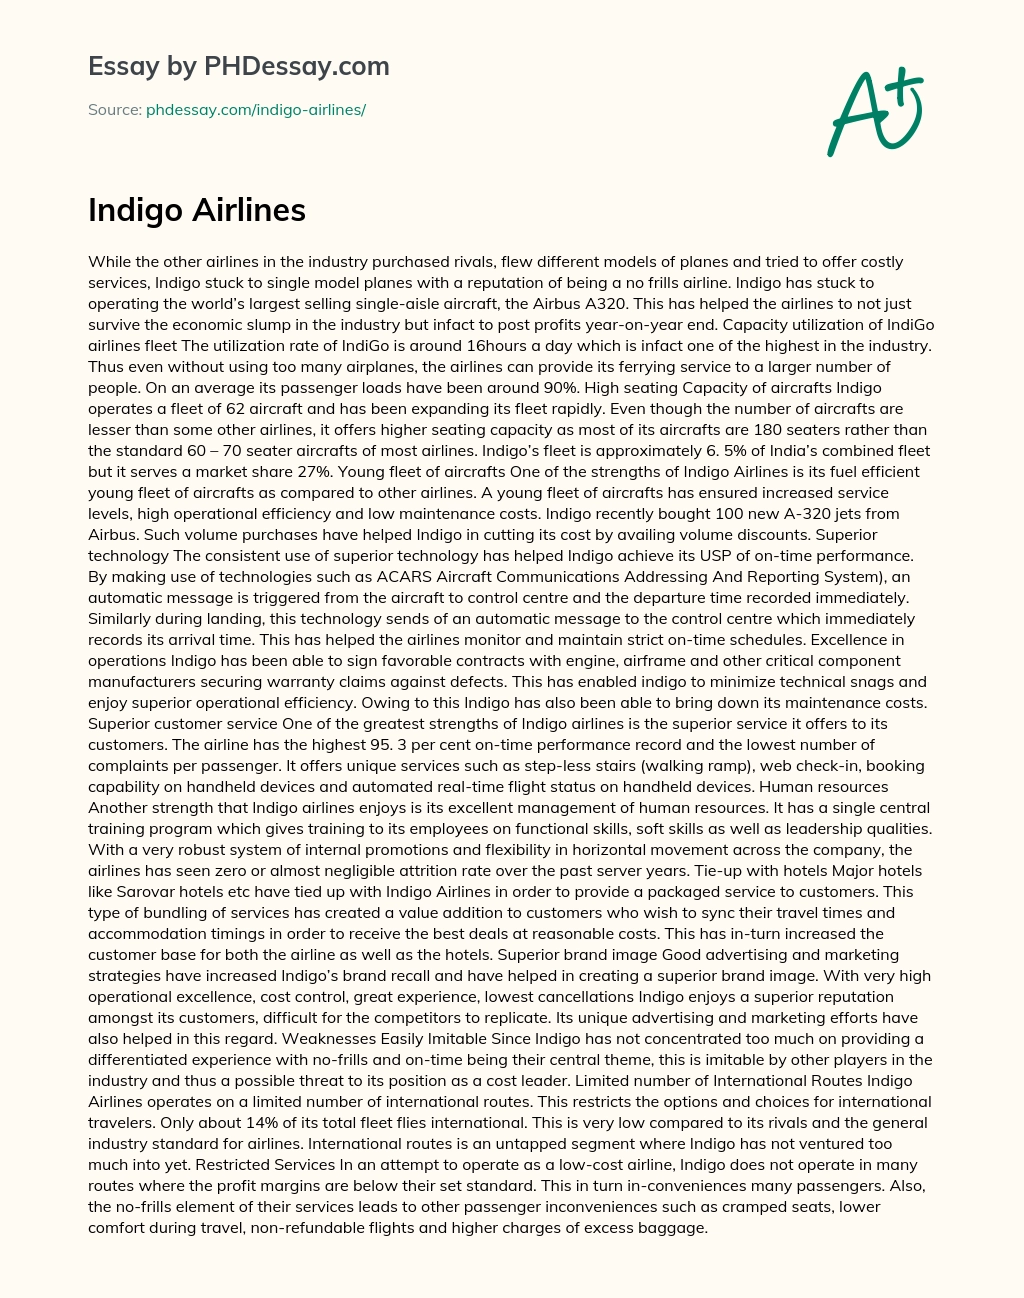 Indigo Airlines essay